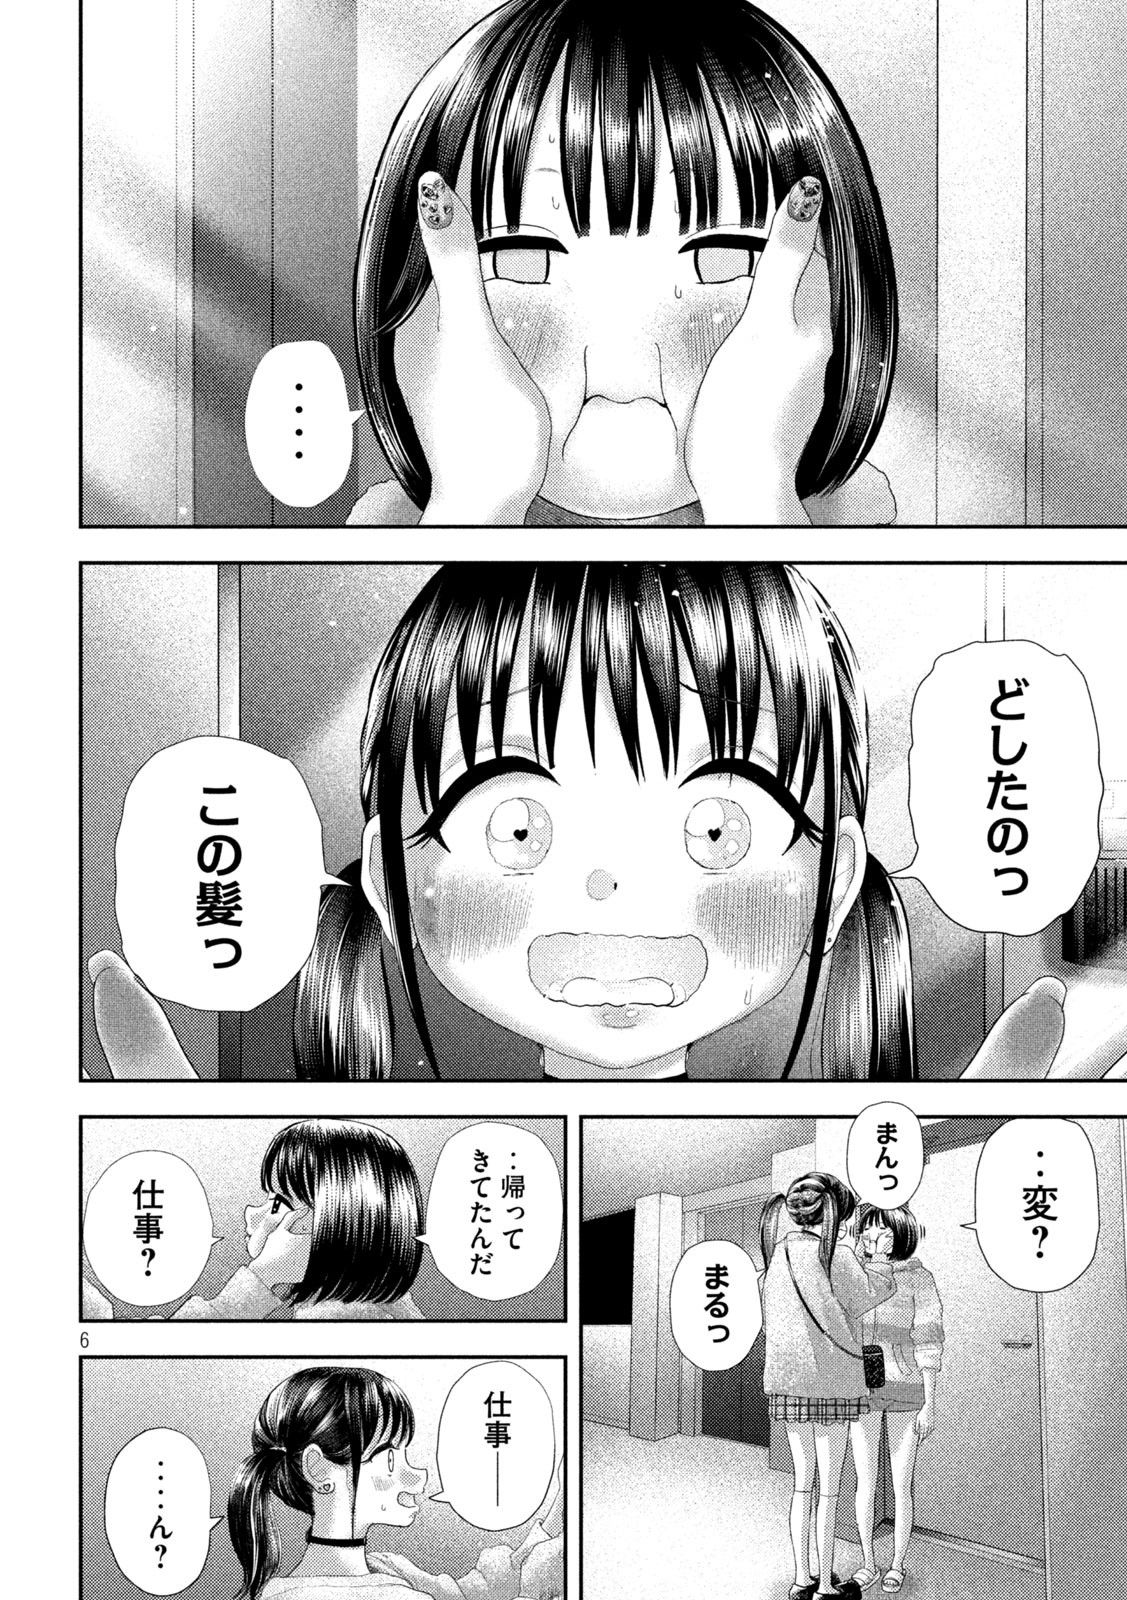 Nezumi no Koi - Chapter 30 - Page 6